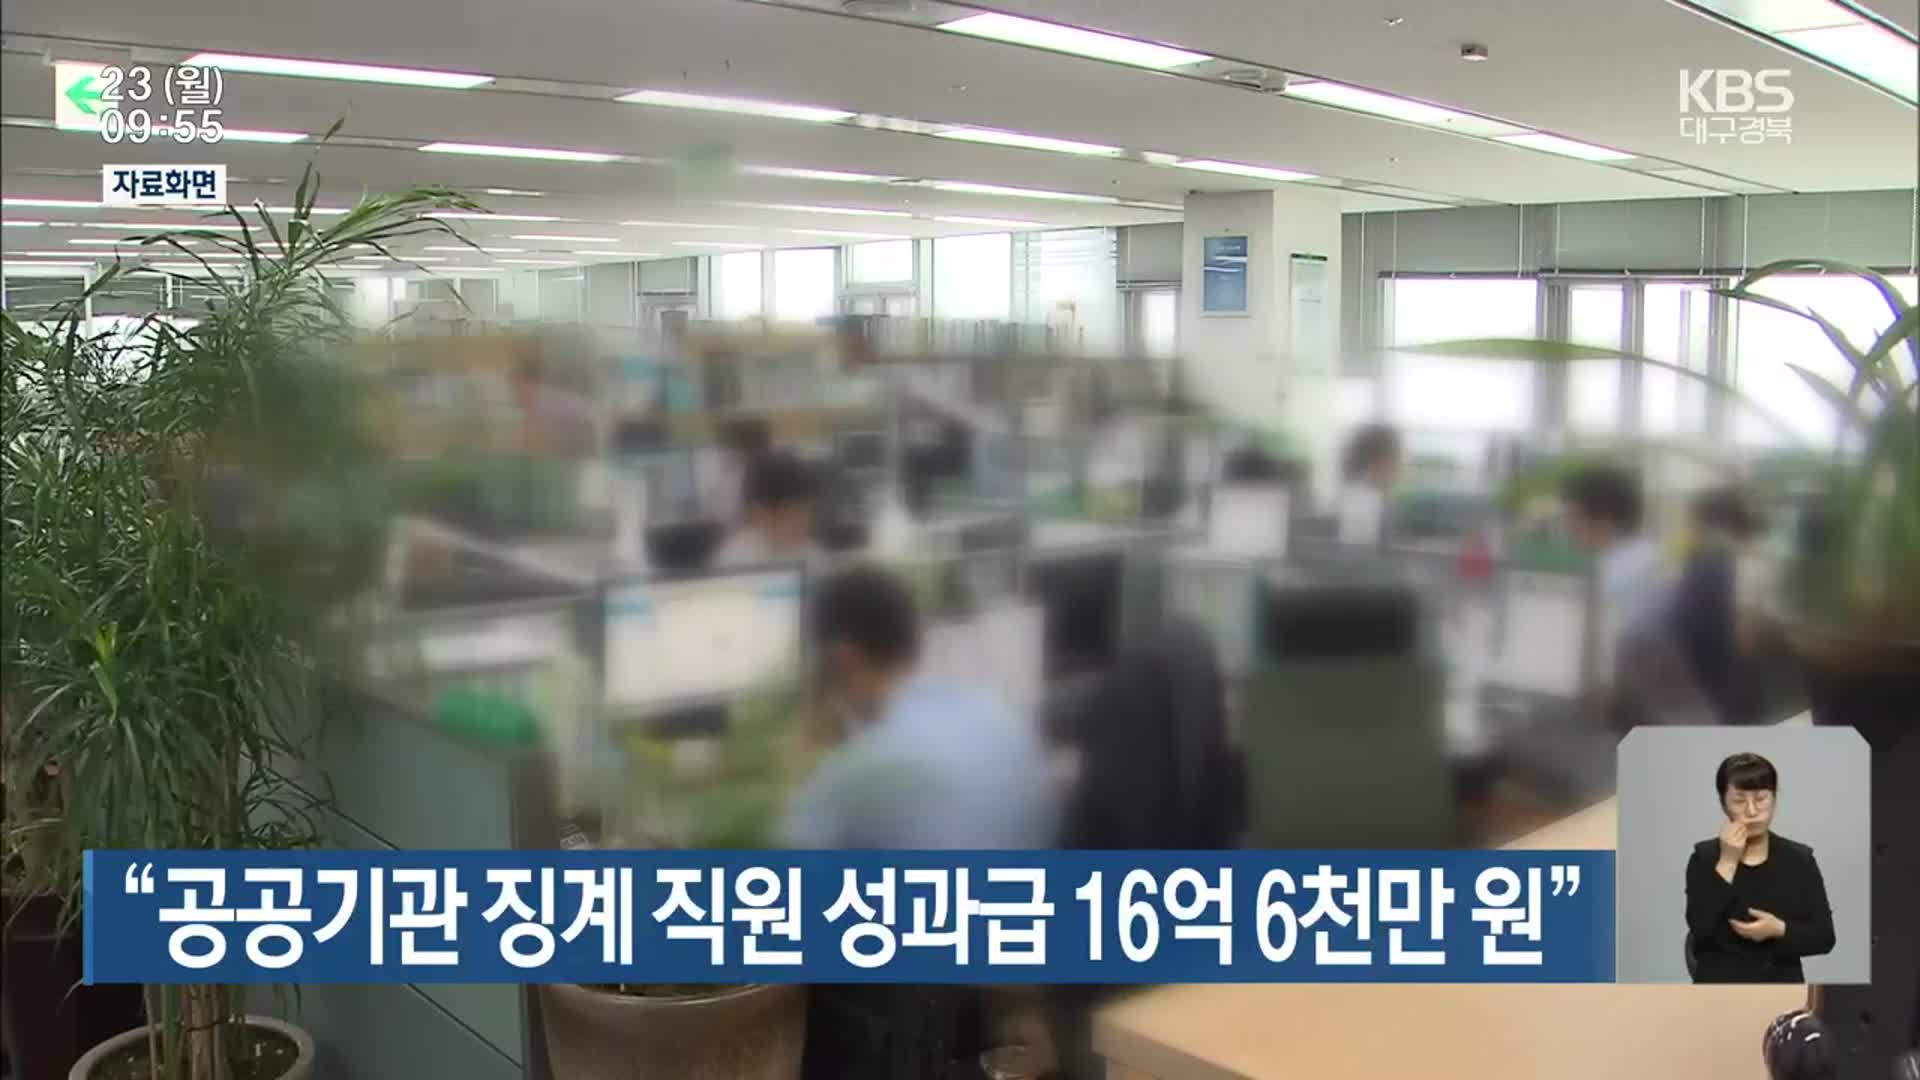 “공공기관 징계 직원 성과급 16억 6천만 원”